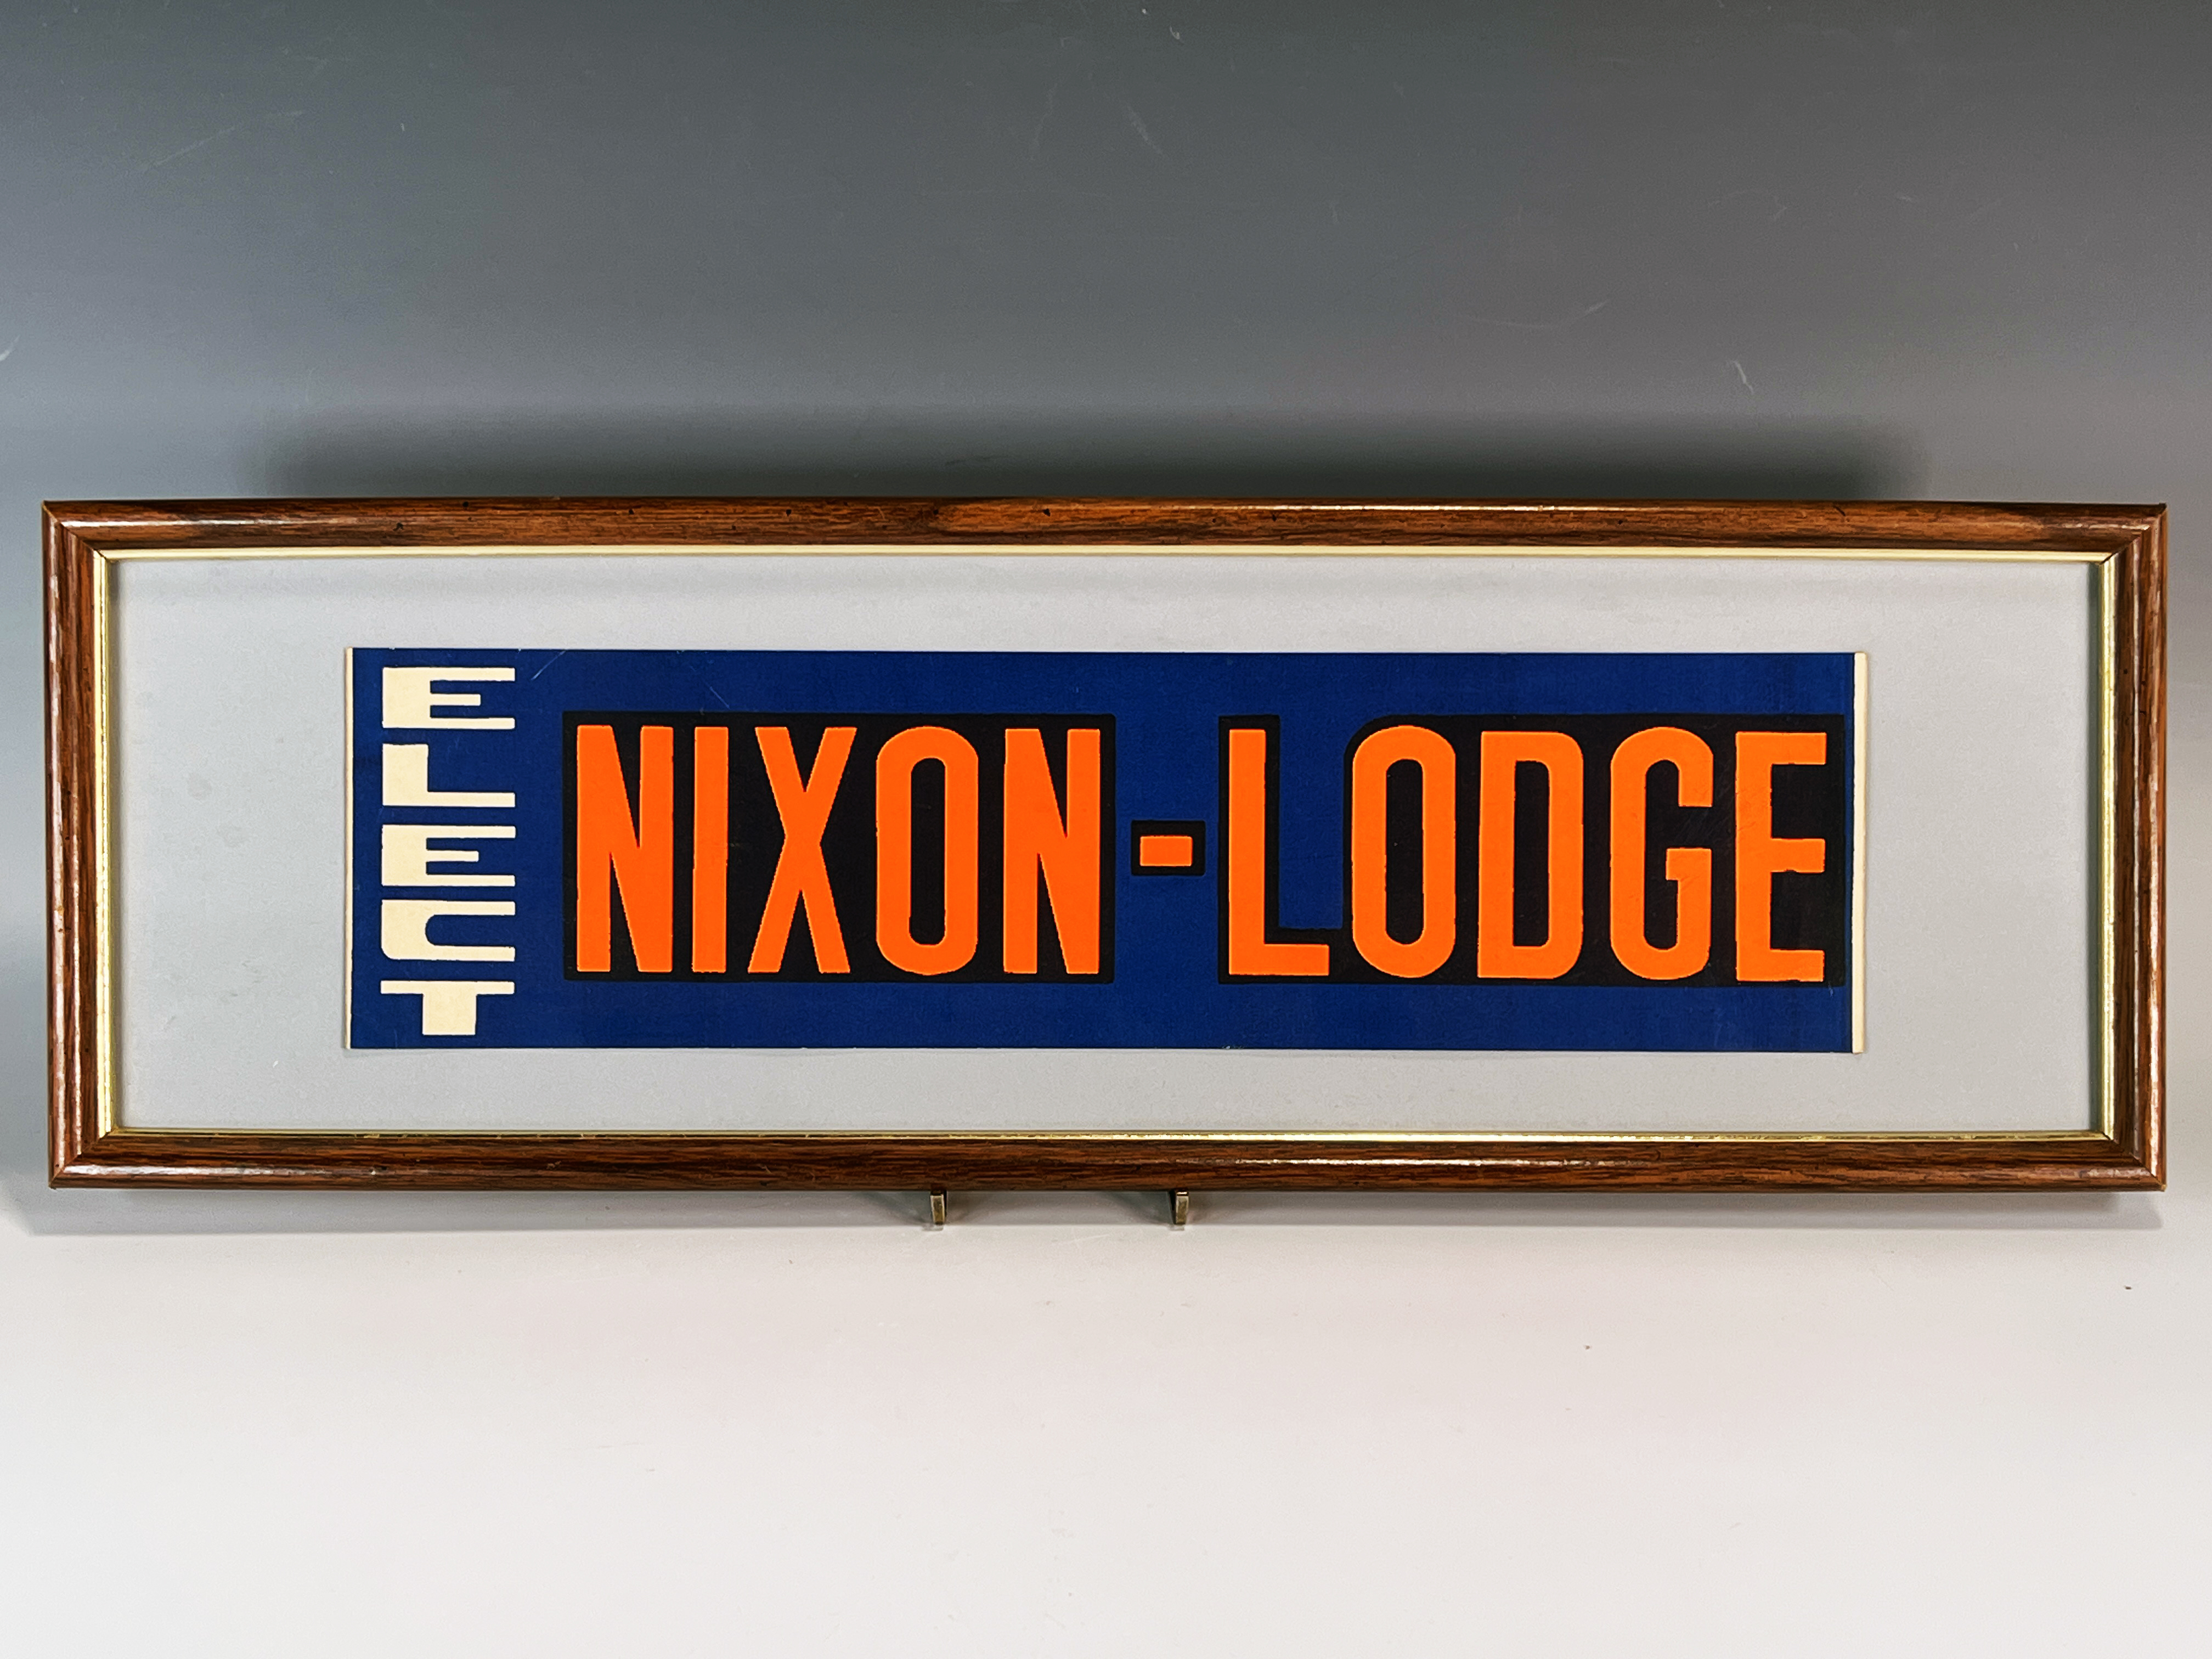 Elect Nixon Lodge Banner image 1